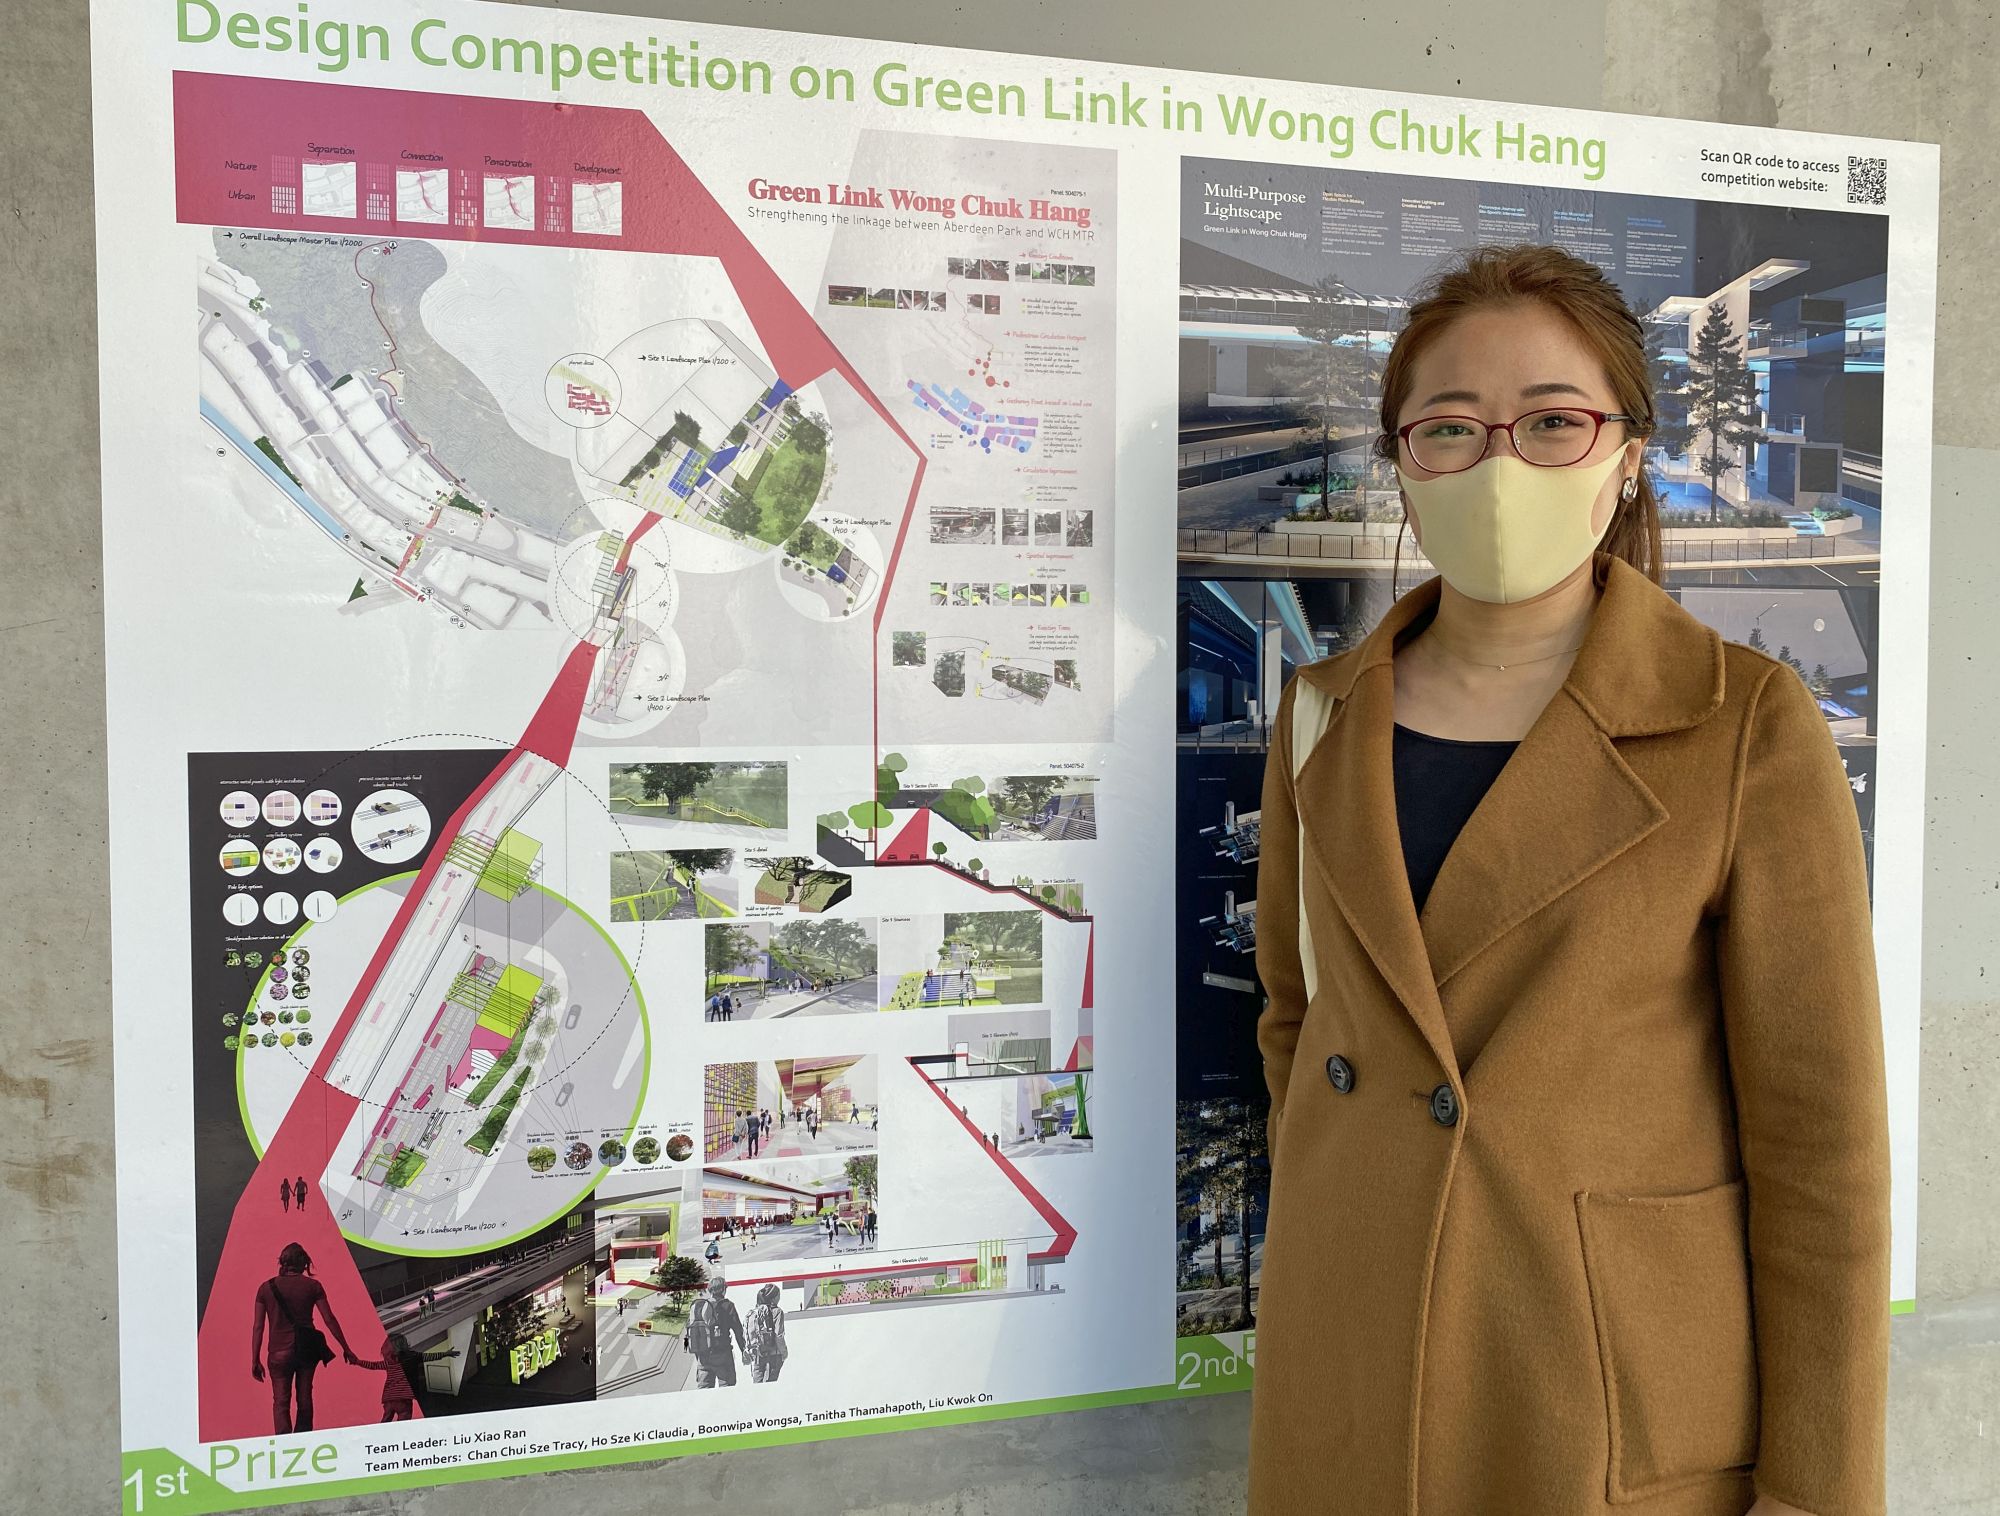 园境师刘潇然带领的团队在「黄竹坑绿色联机」设计比赛中获得冠军。图左为获奖作品的设计构想图。